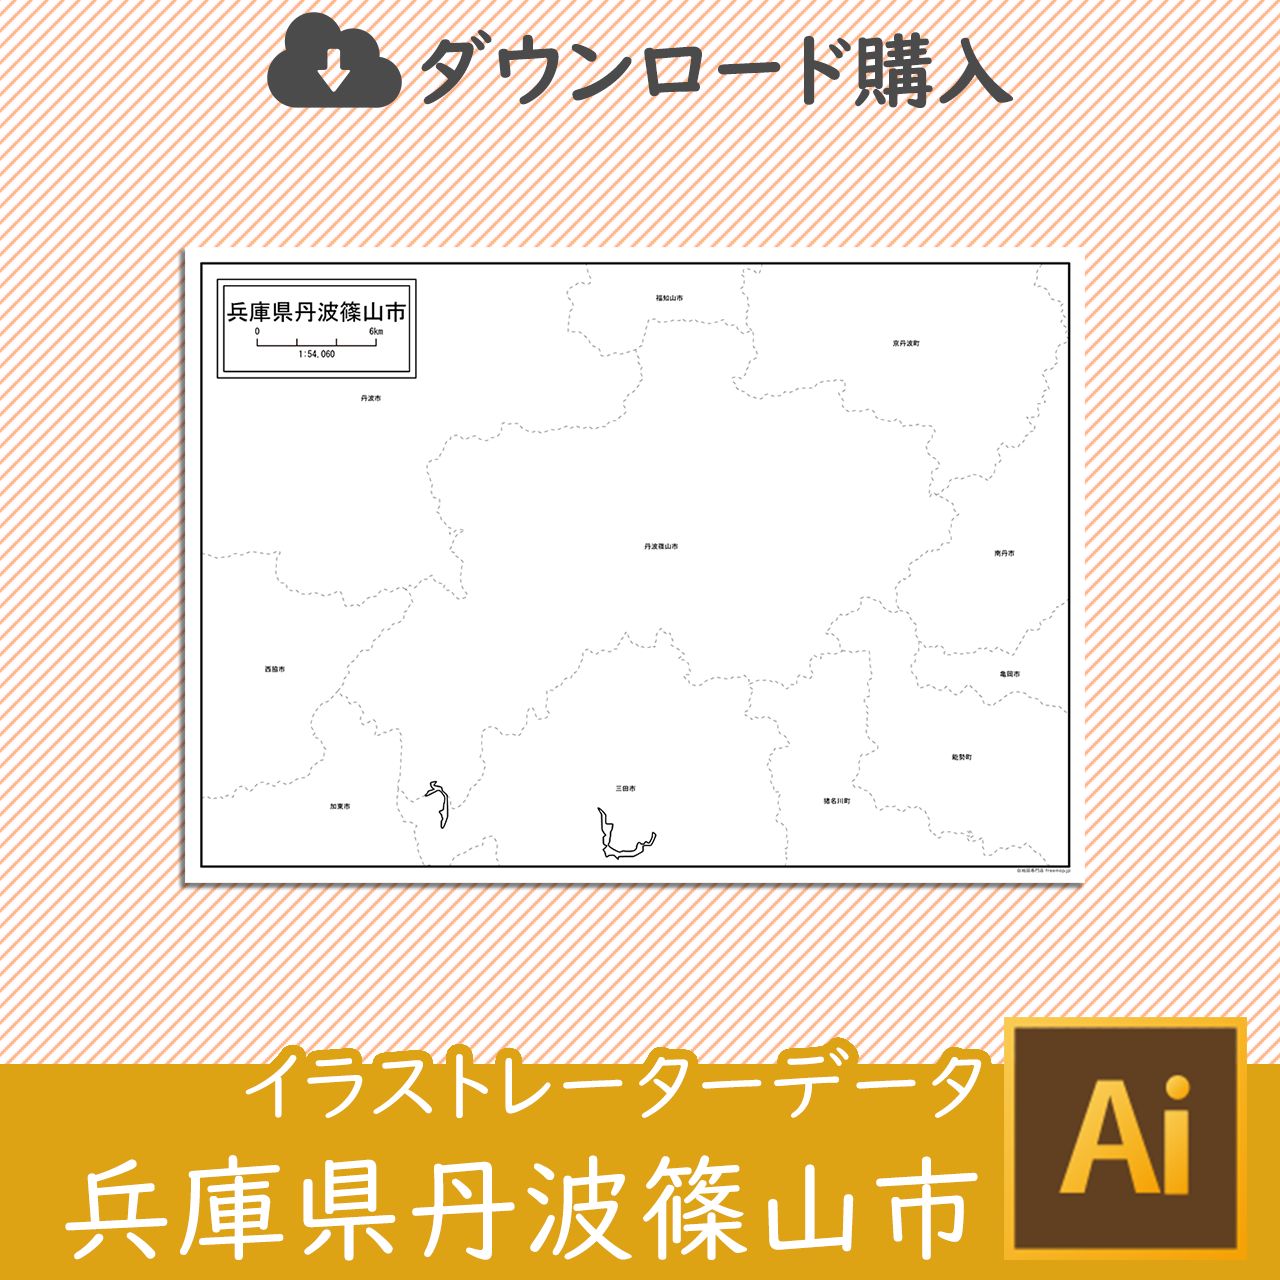 丹波篠山市のaiデータのサムネイル画像